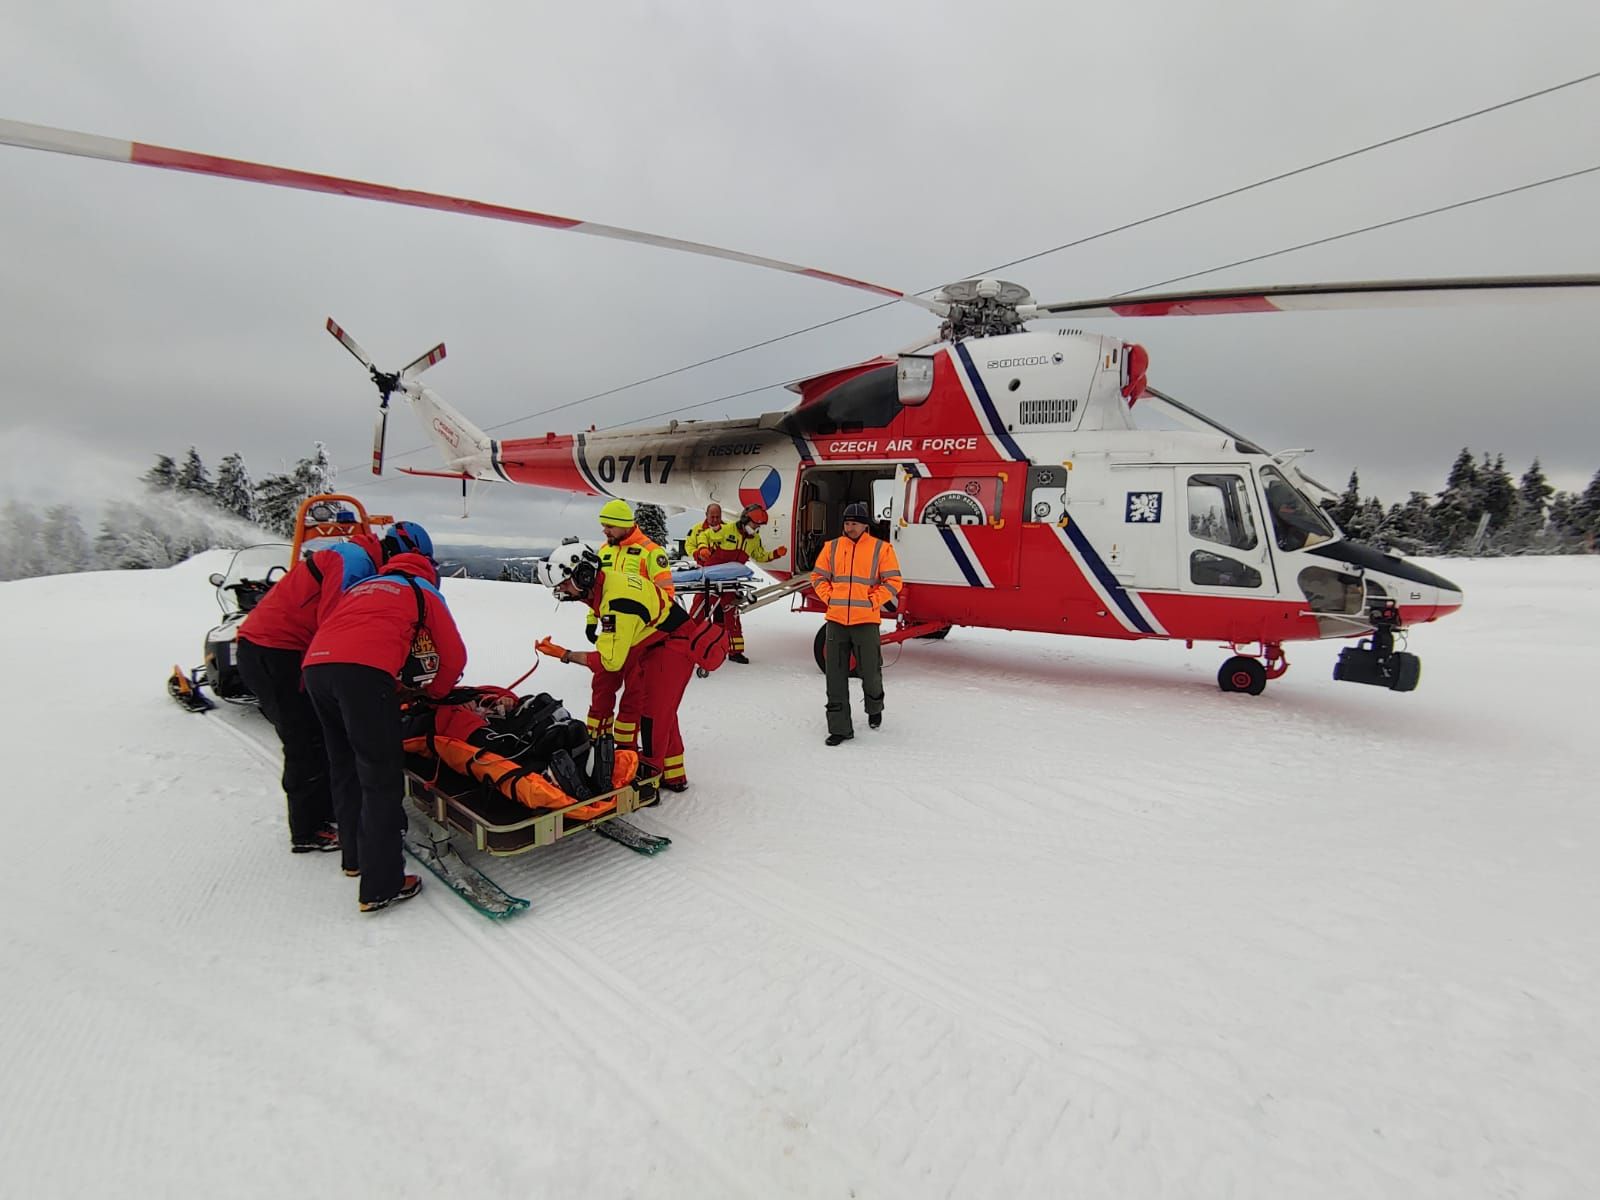 Klínovec: Zraněného lyžaře transportoval vrtulník do nemocnice